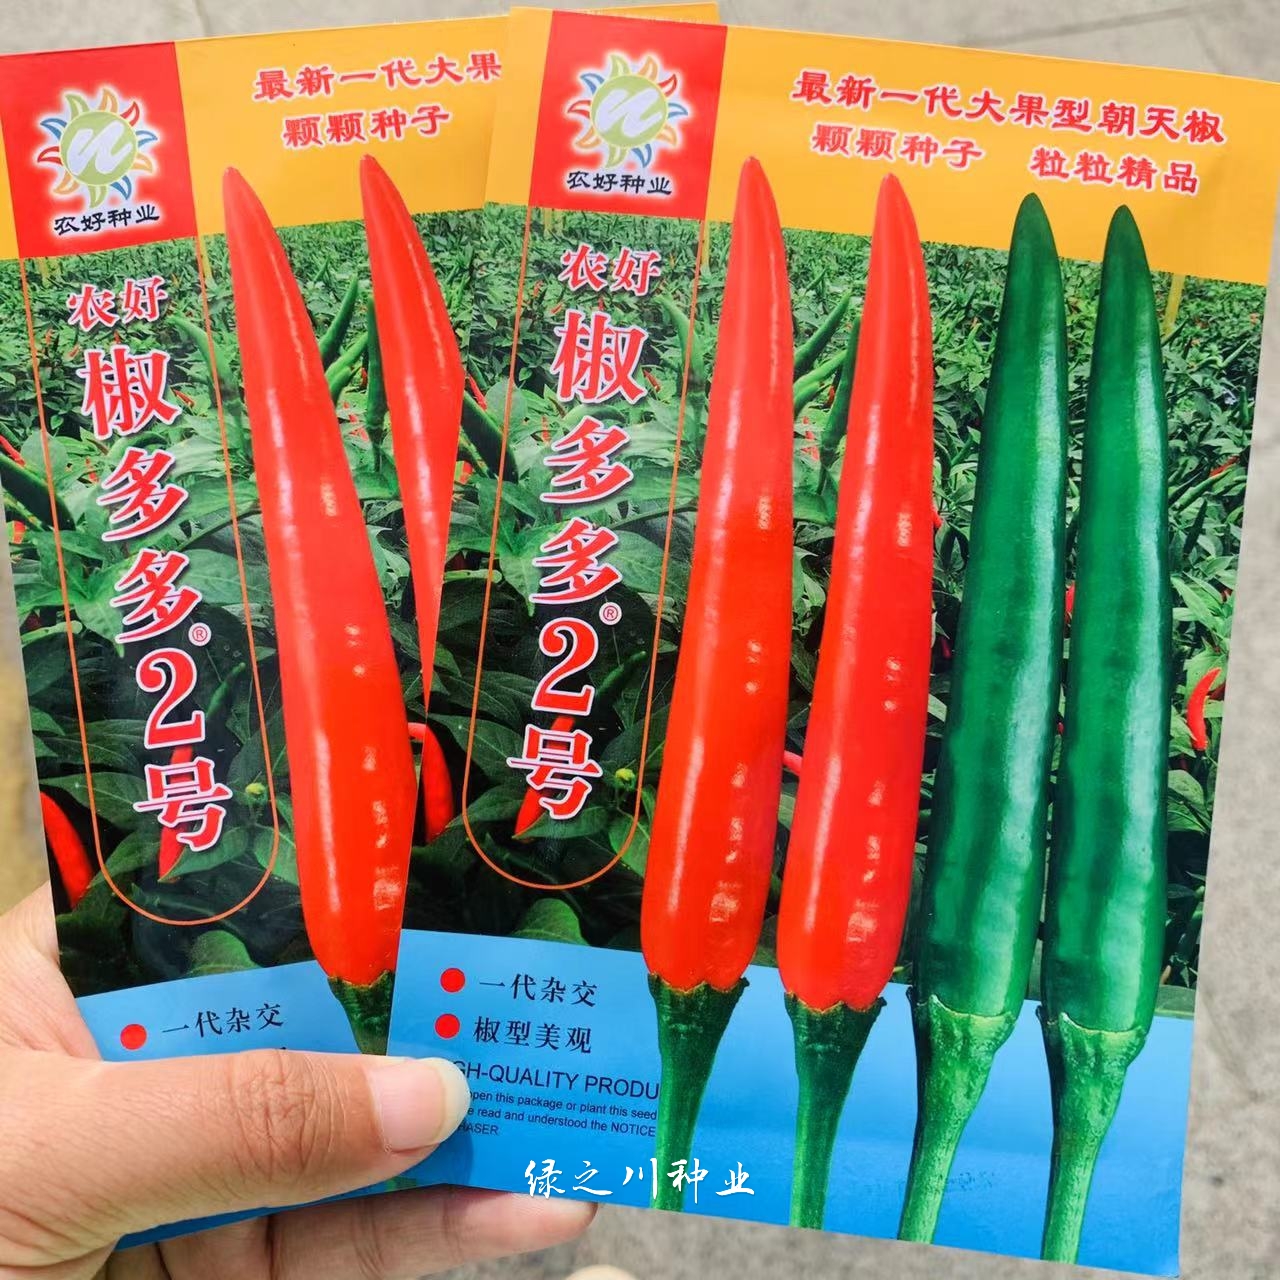 沭阳县正品椒多多2号朝天椒种子泰国引进大果型米椒种子高产单生朝天椒